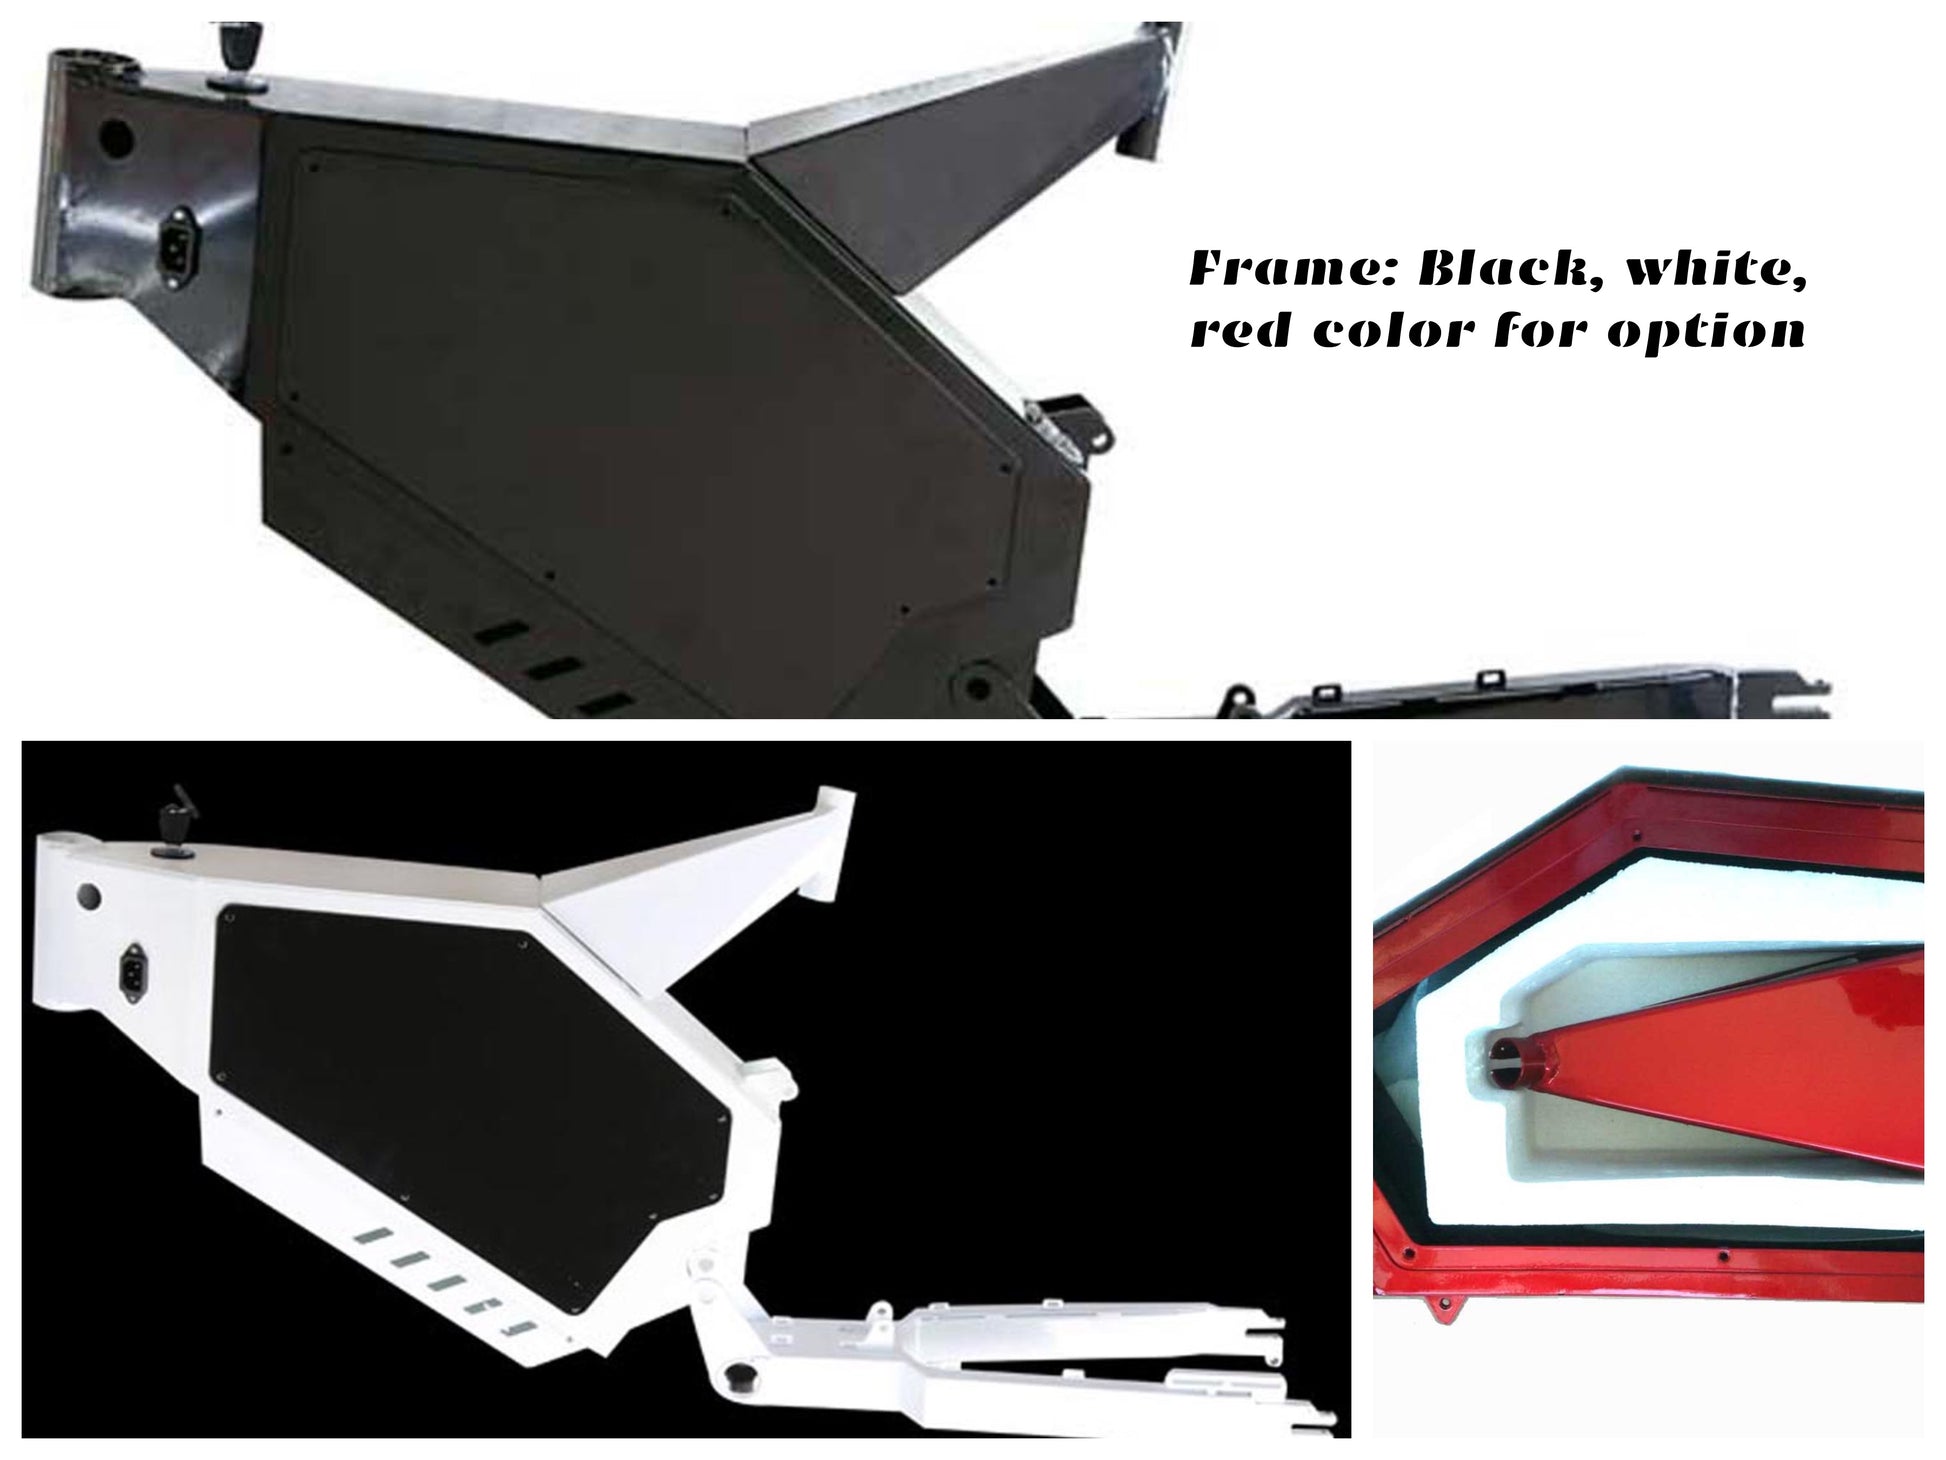 stealth bomber bike frame black, white red